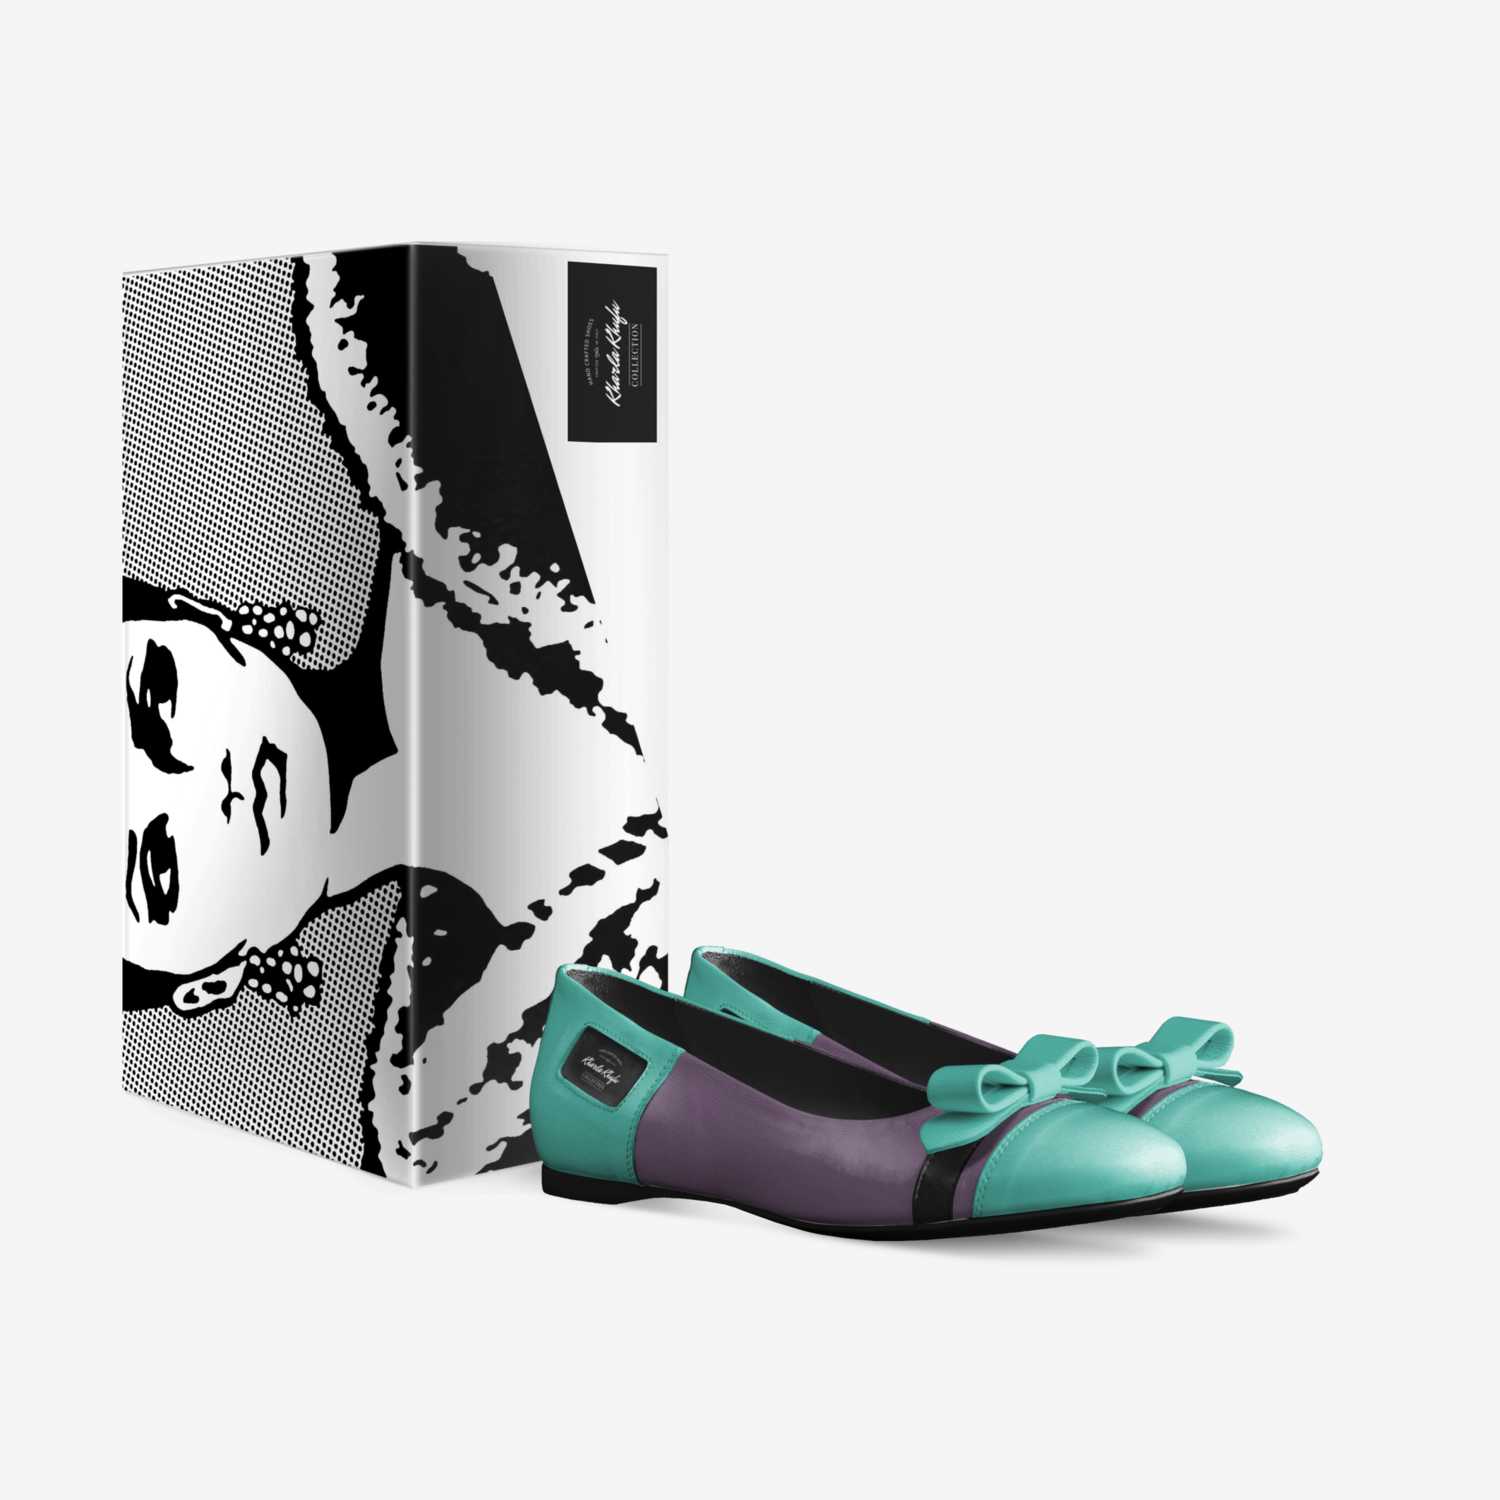 Kharla Khufu  custom made in Italy shoes by Sebren Khufu | Box view